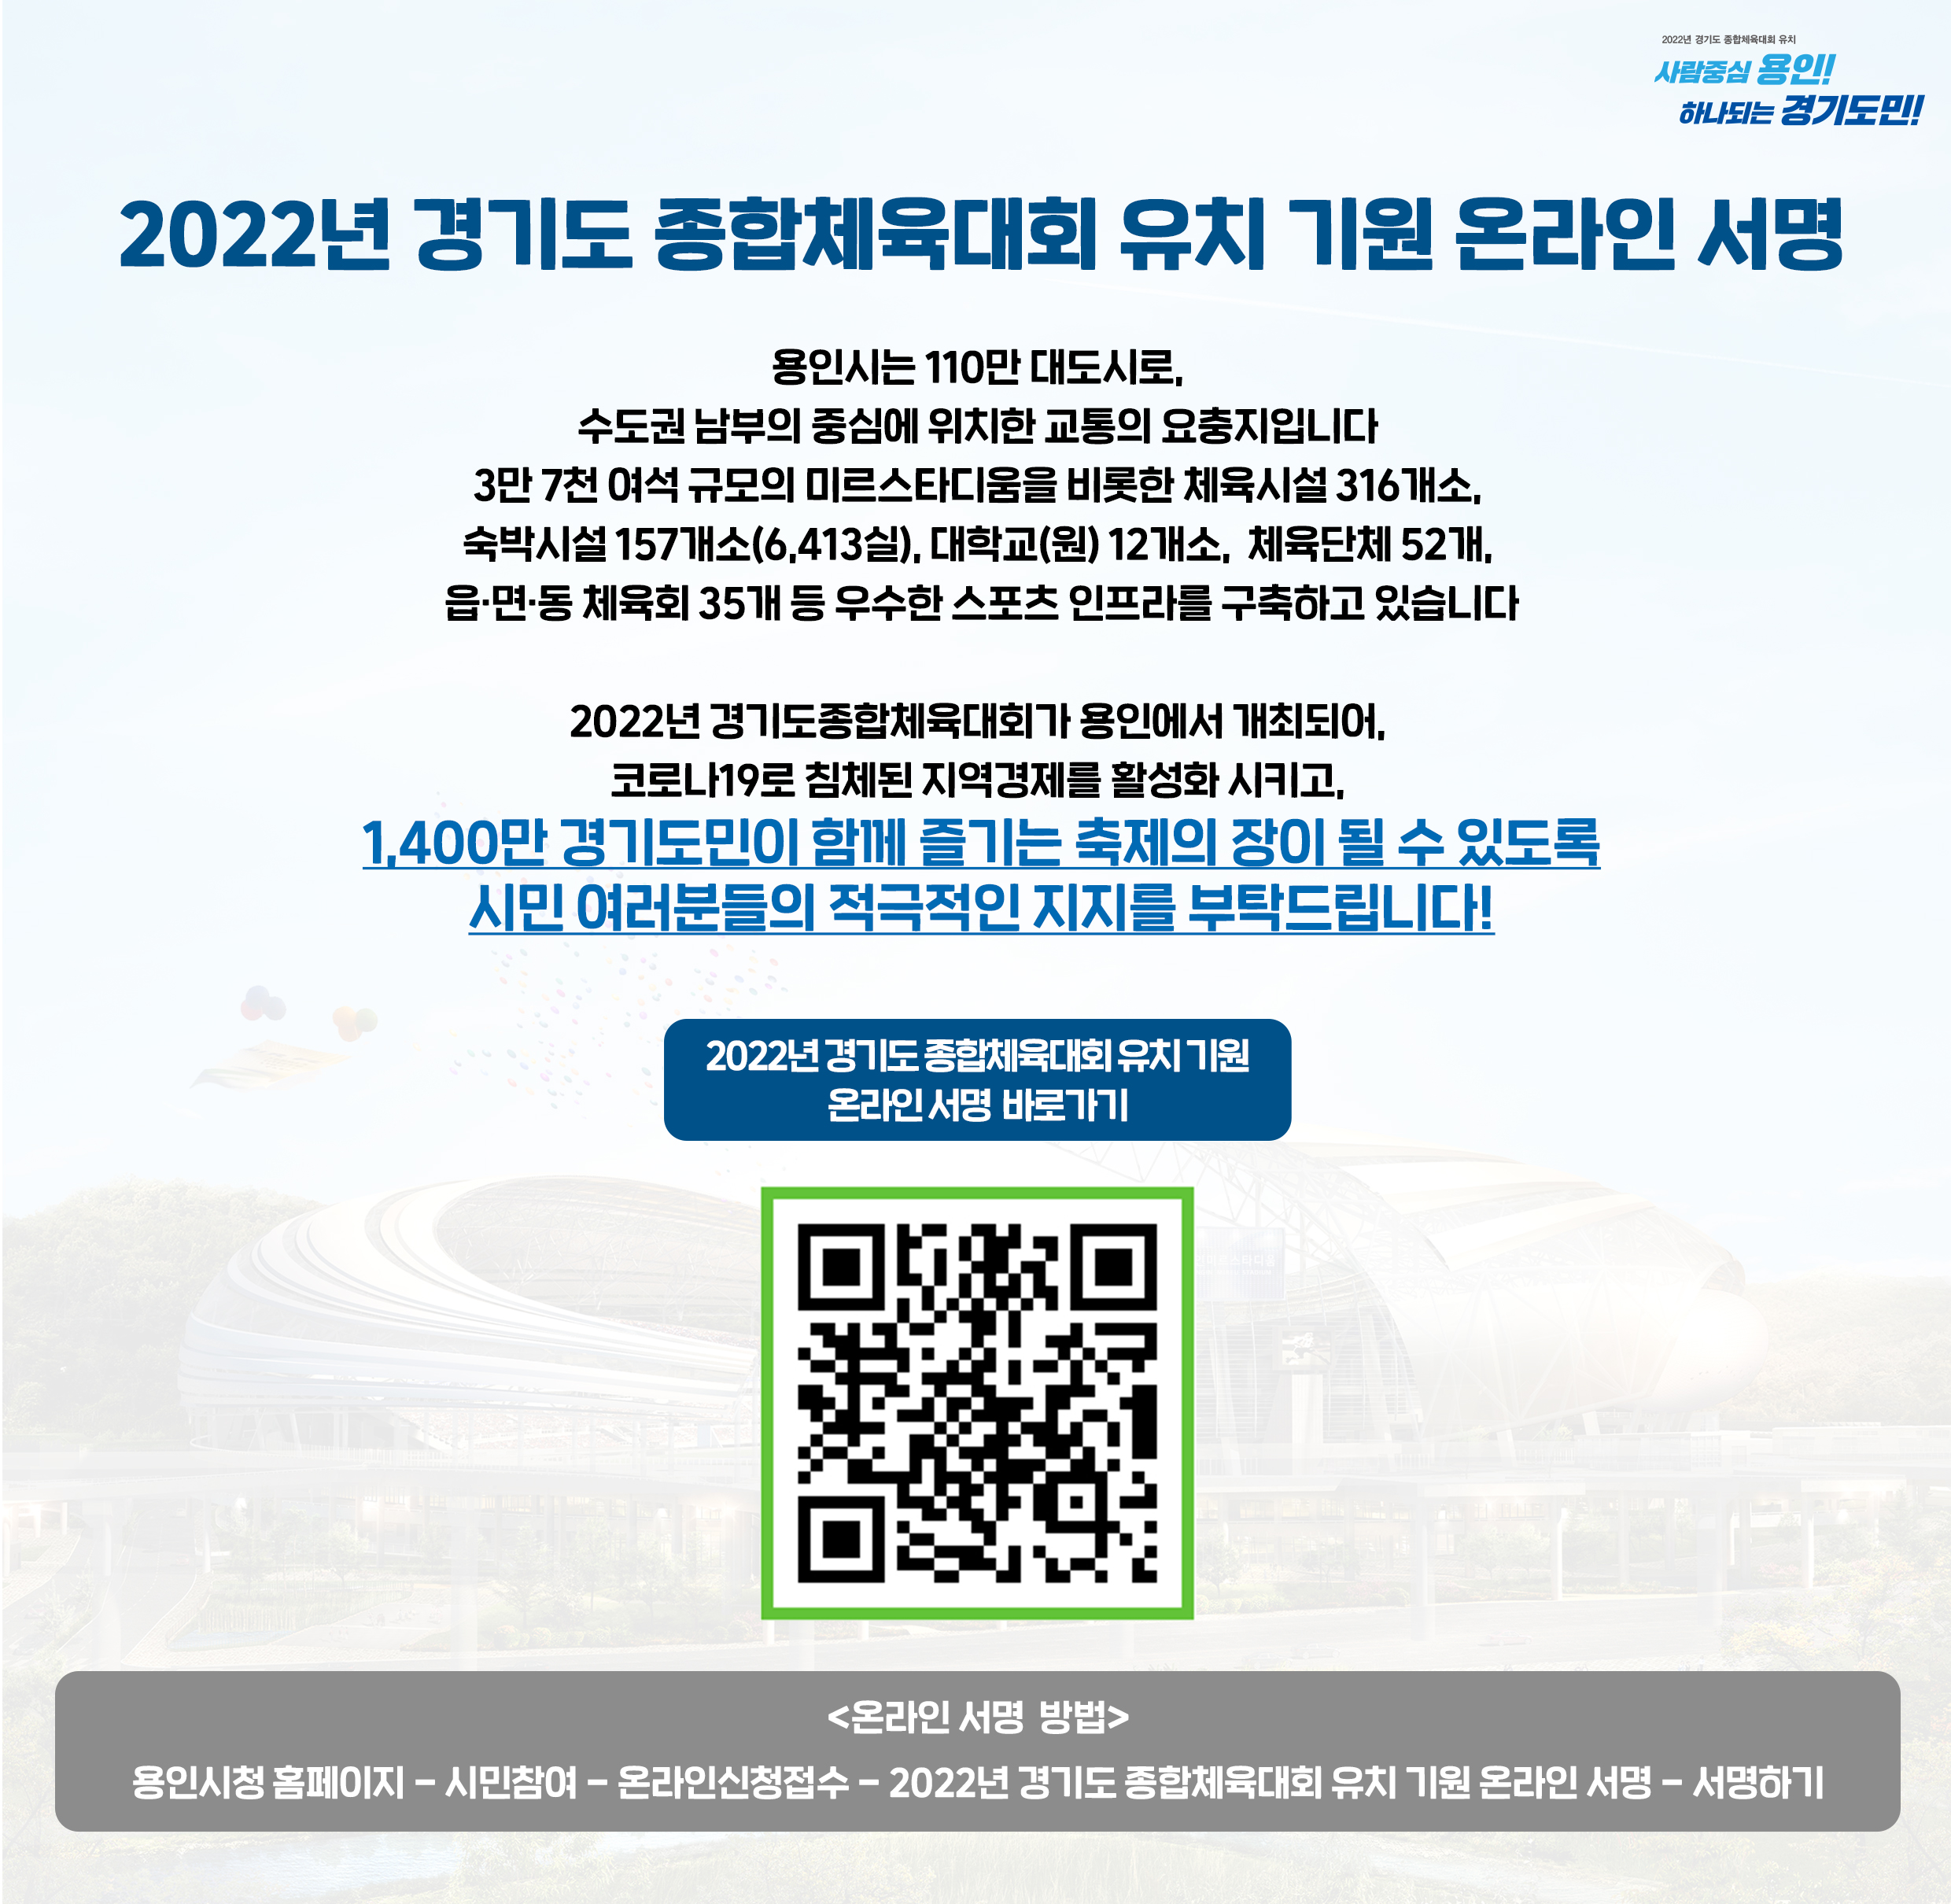 용인시, 2022년 도민체전 유치 온라인 서명운동